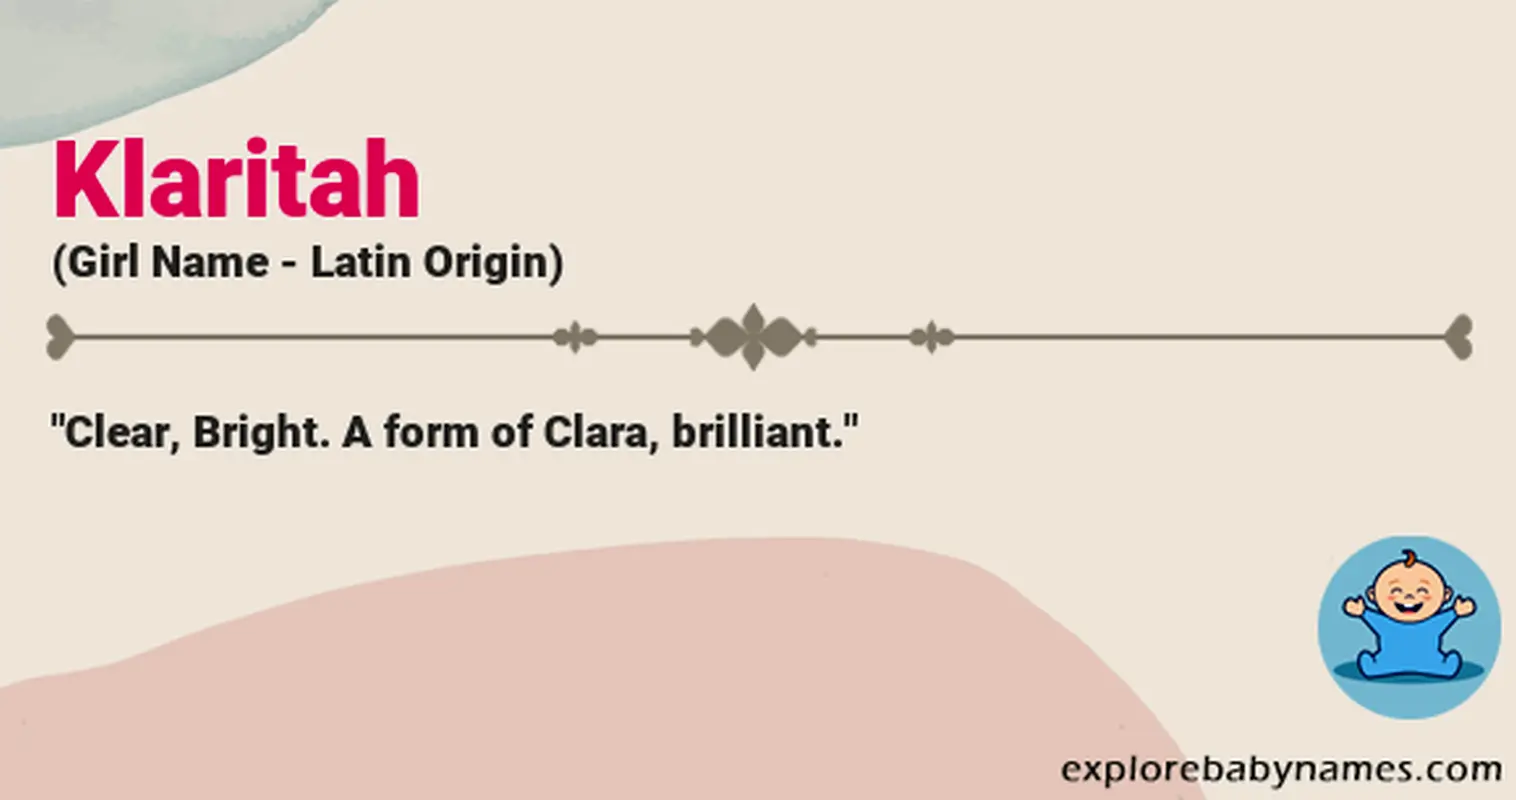 Meaning of Klaritah